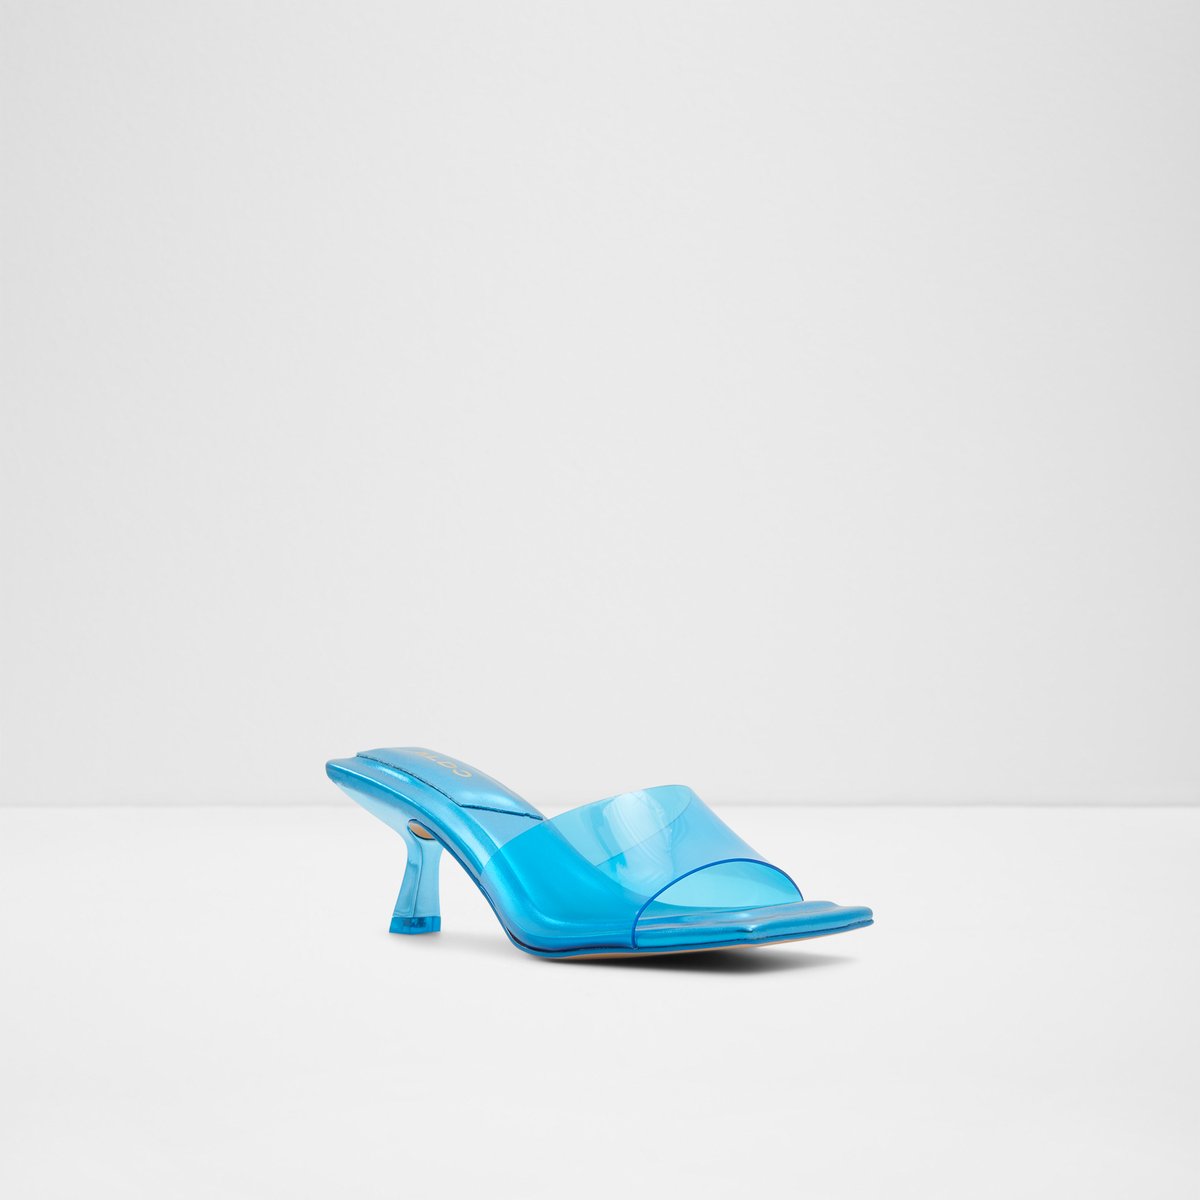 Cassilia Women Shoes - Medium Blue - ALDO KSA